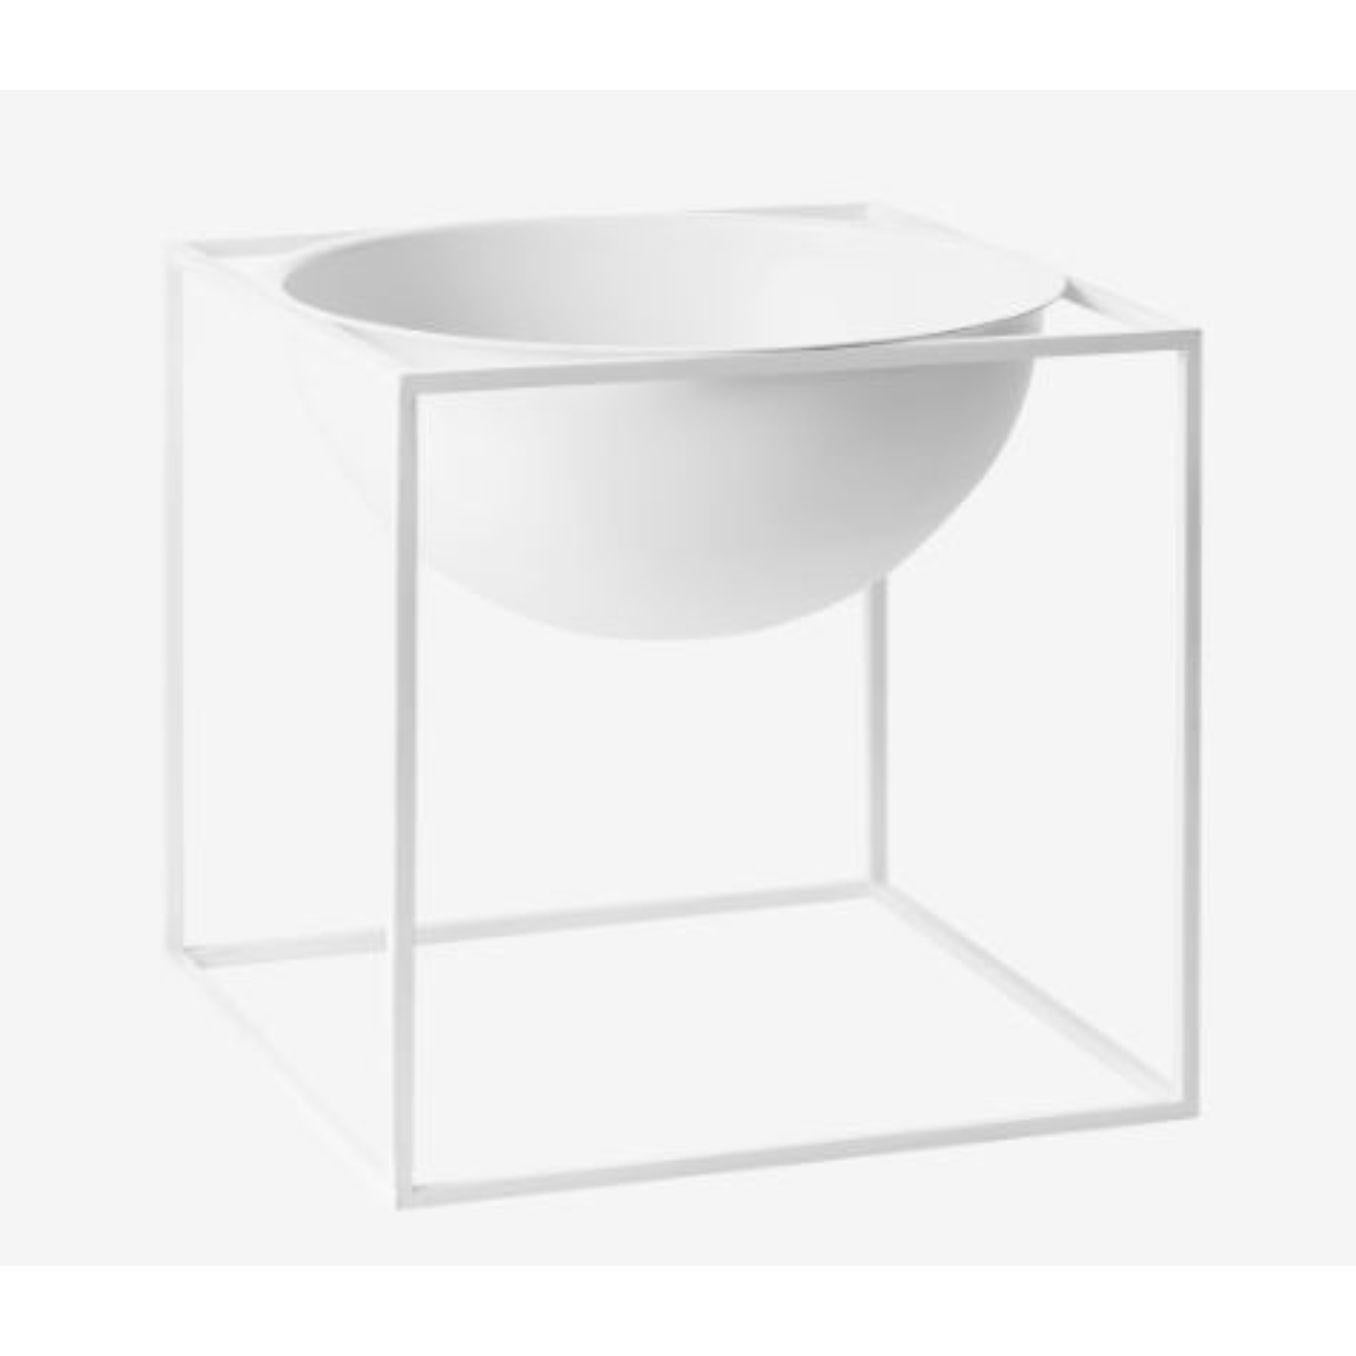 Grand bol Kubus blanc de Lassen
Dimensions : D 23 x L 23 x H 23 cm 
Matériaux : Métal 
Poids : 3 kg

Le Kubus Bowl est basé sur des croquis originaux de Mogens Lassen, et contient des éléments du Bauhaus, dont Mogens Lassen s'est inspiré. Le Kubus